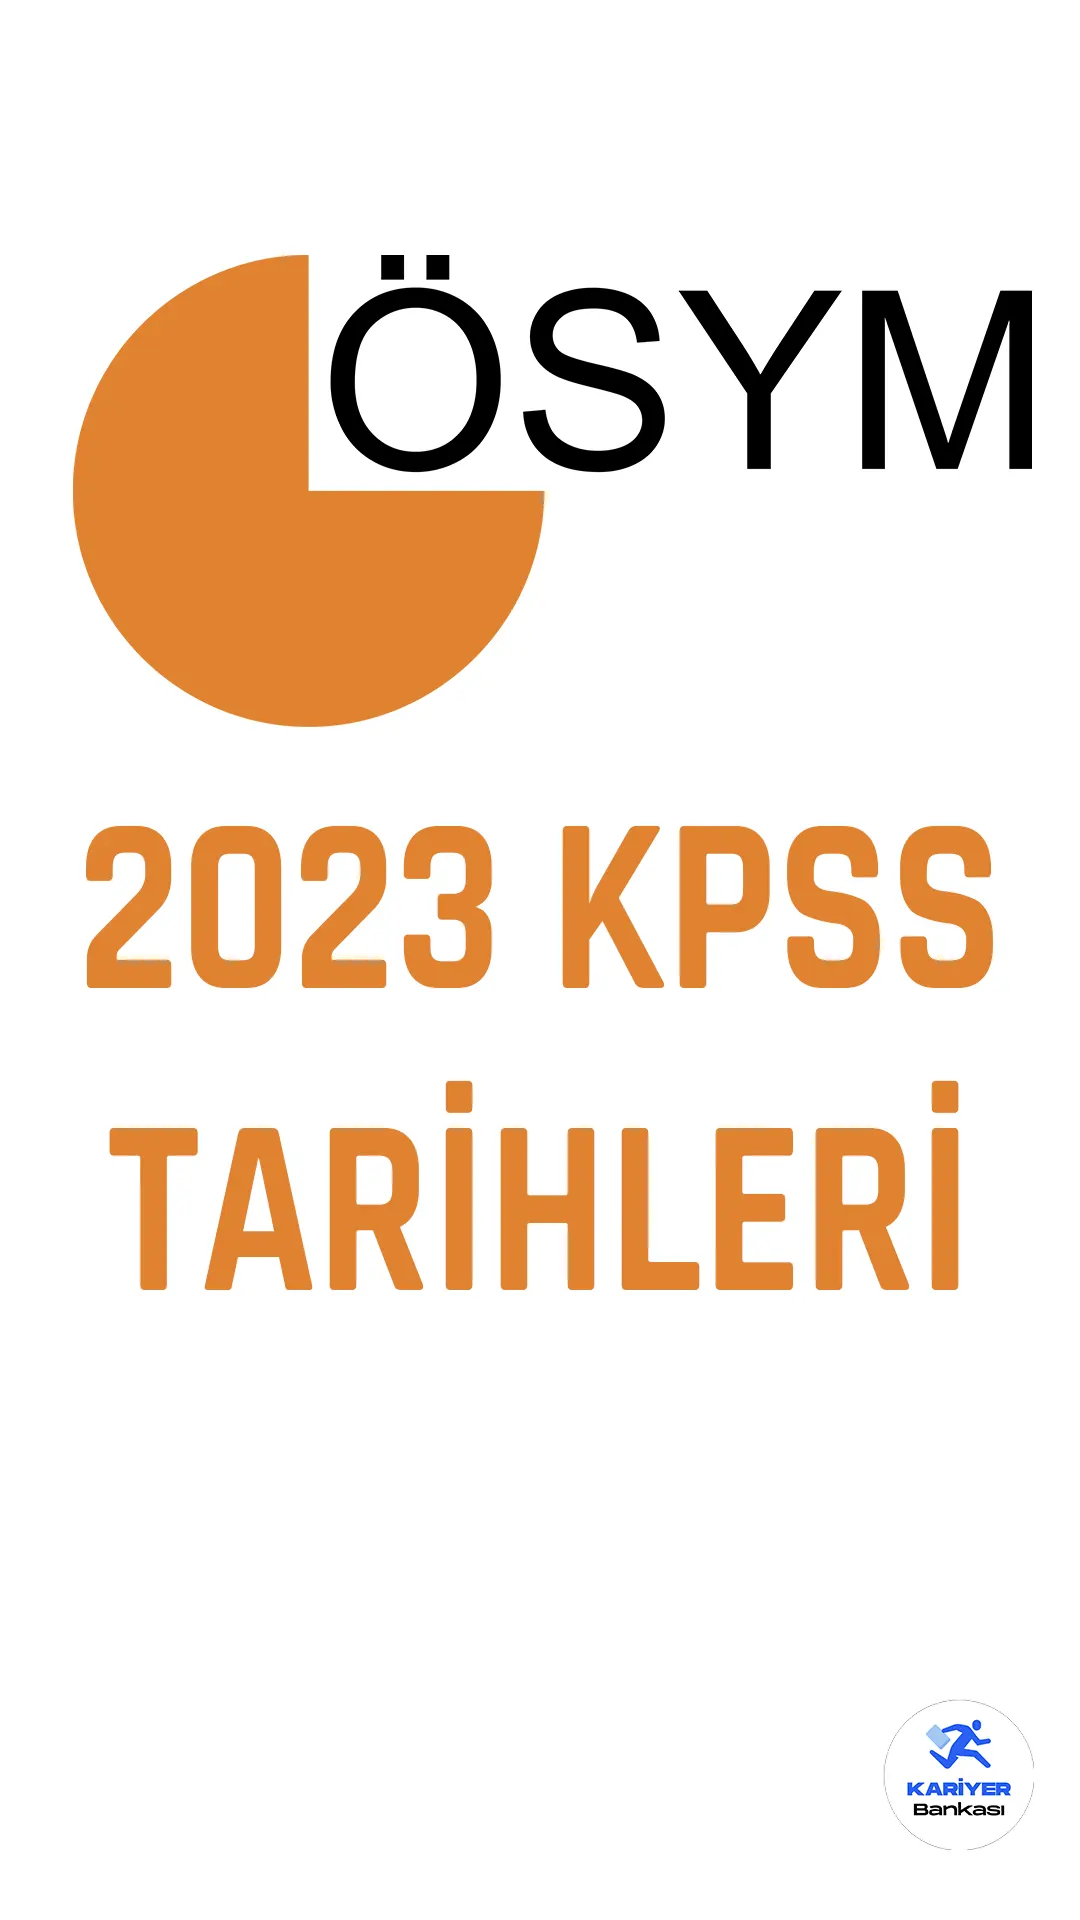 2023 KPSS tarihleri açıklandı.